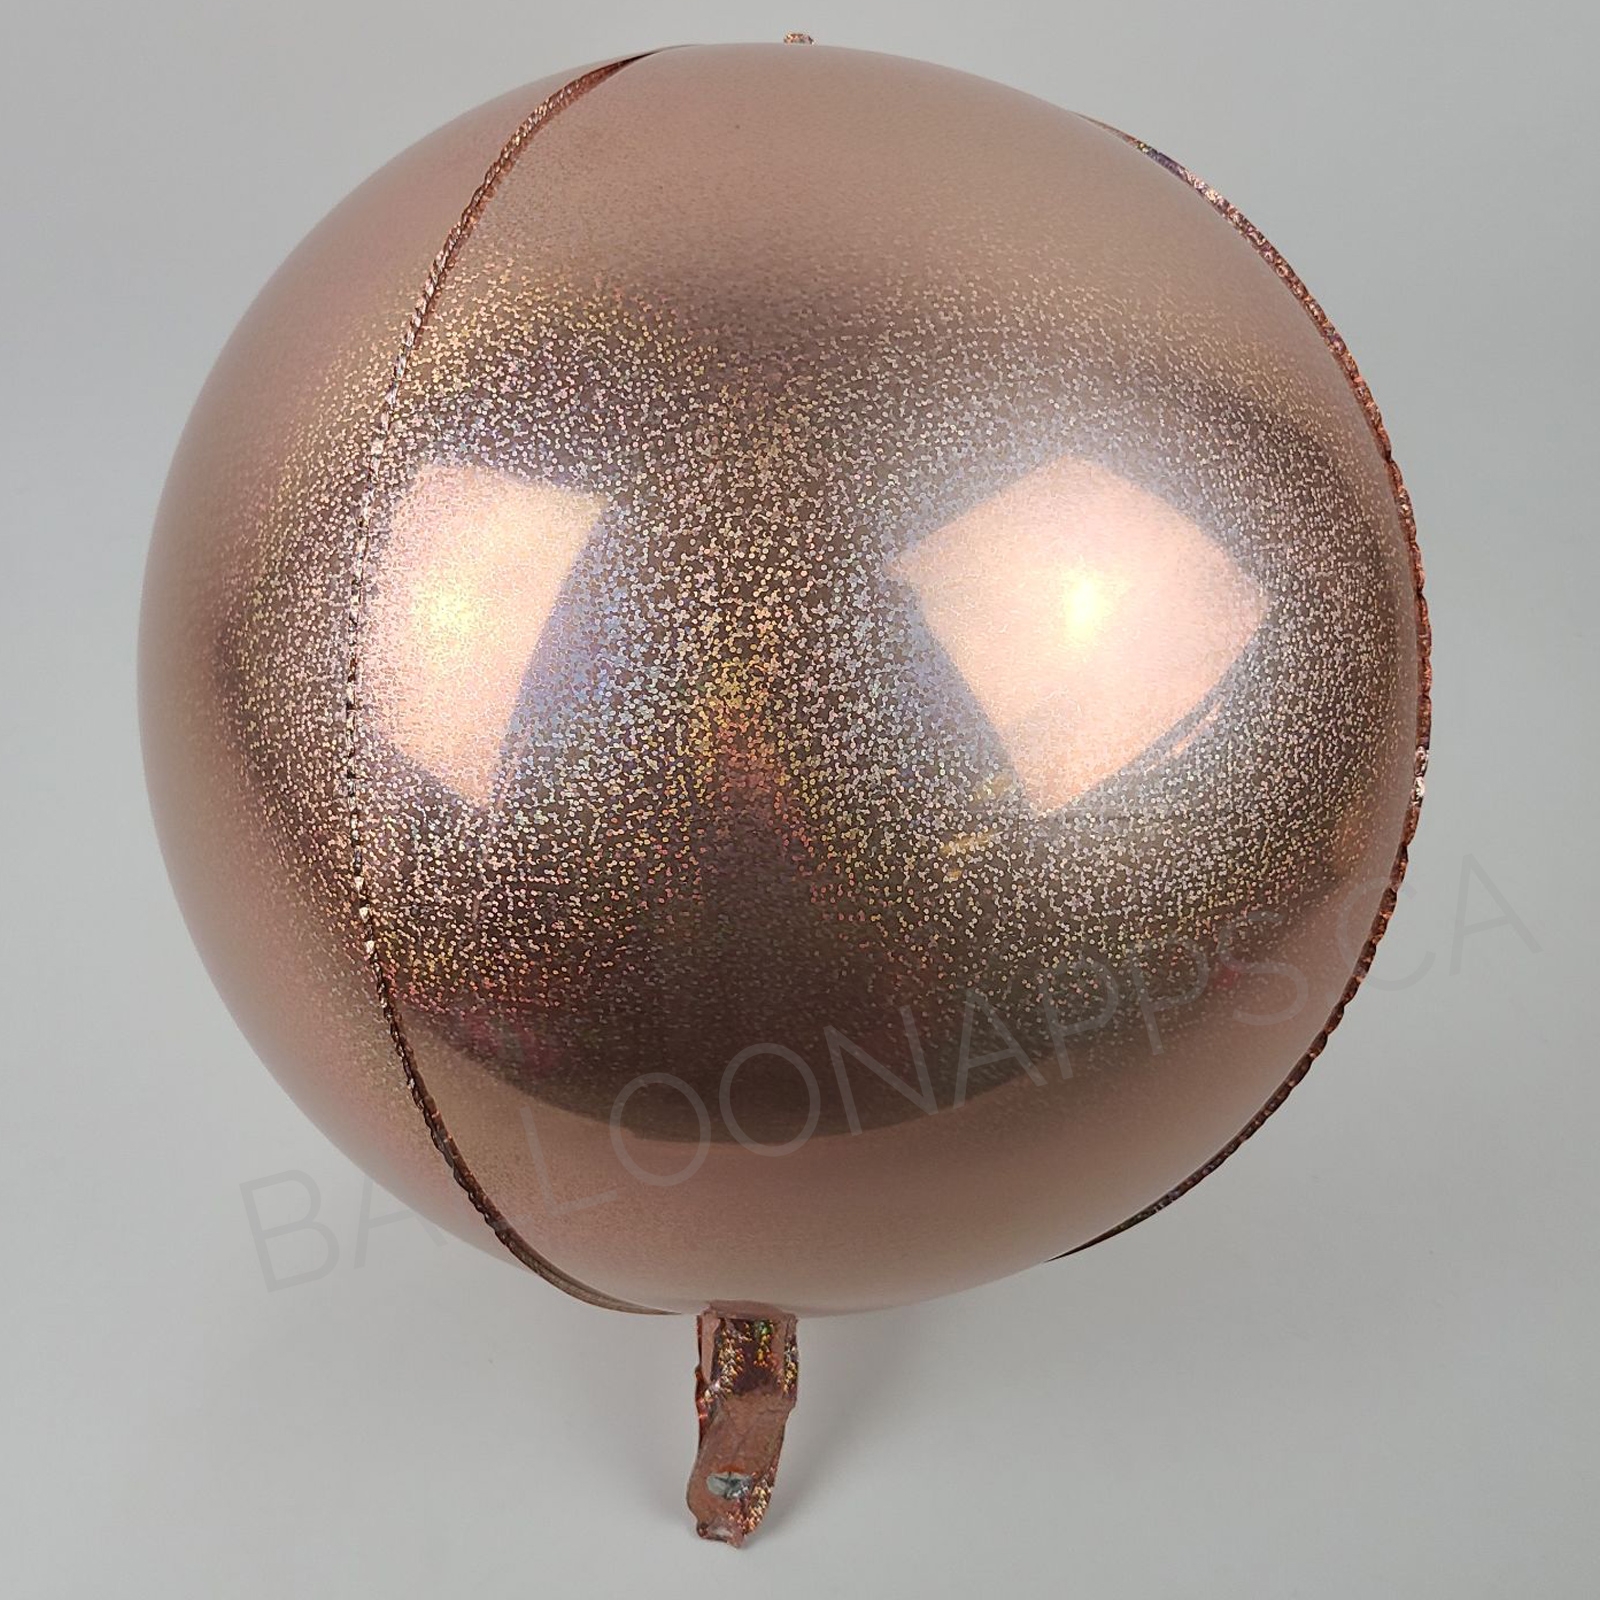 Econo-Luxe Iridescent Rose Gold Orbz balloon